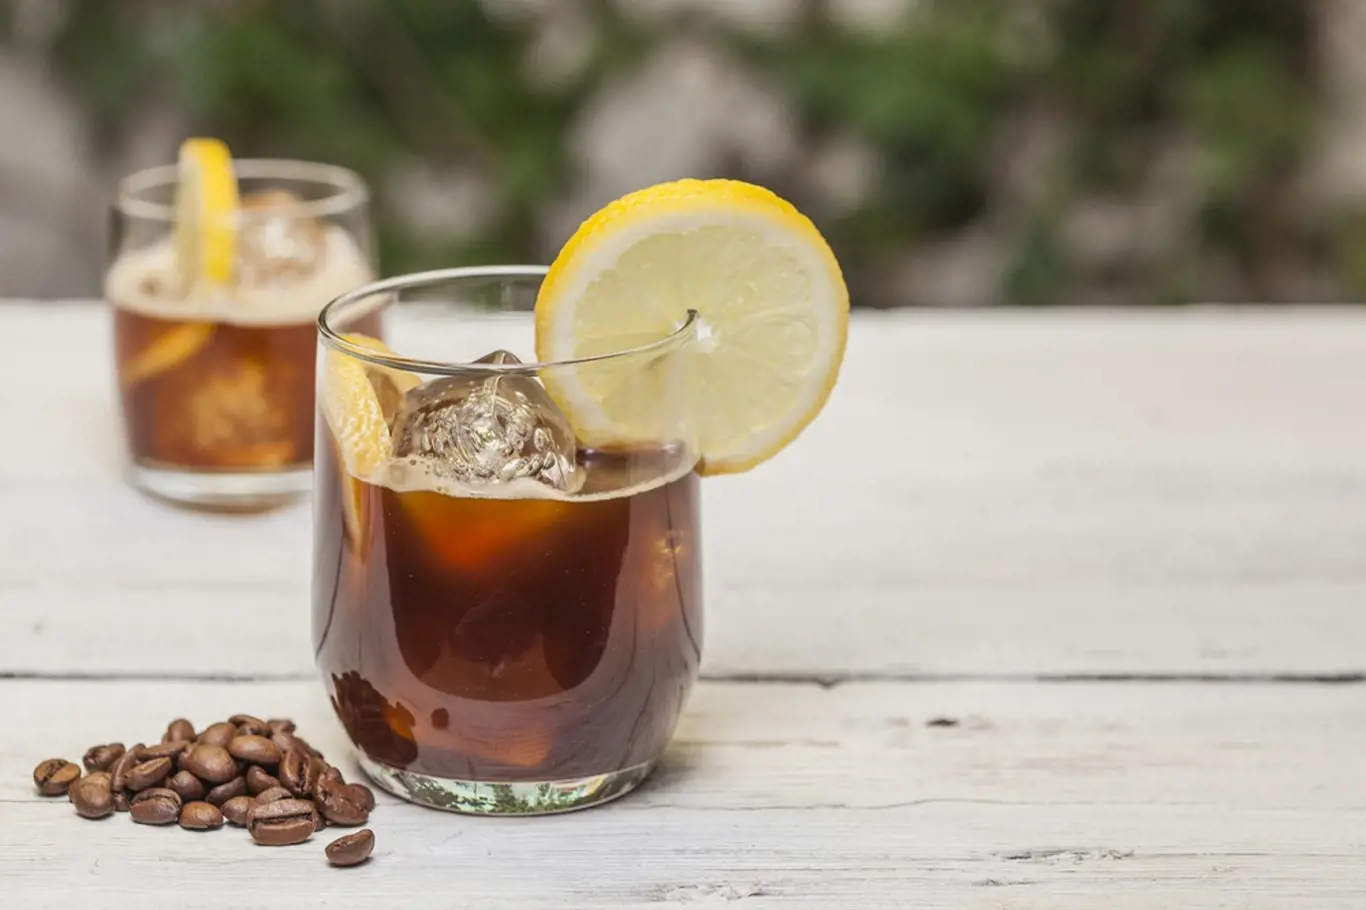 Může být káva s citronem účinná při hubnutí?